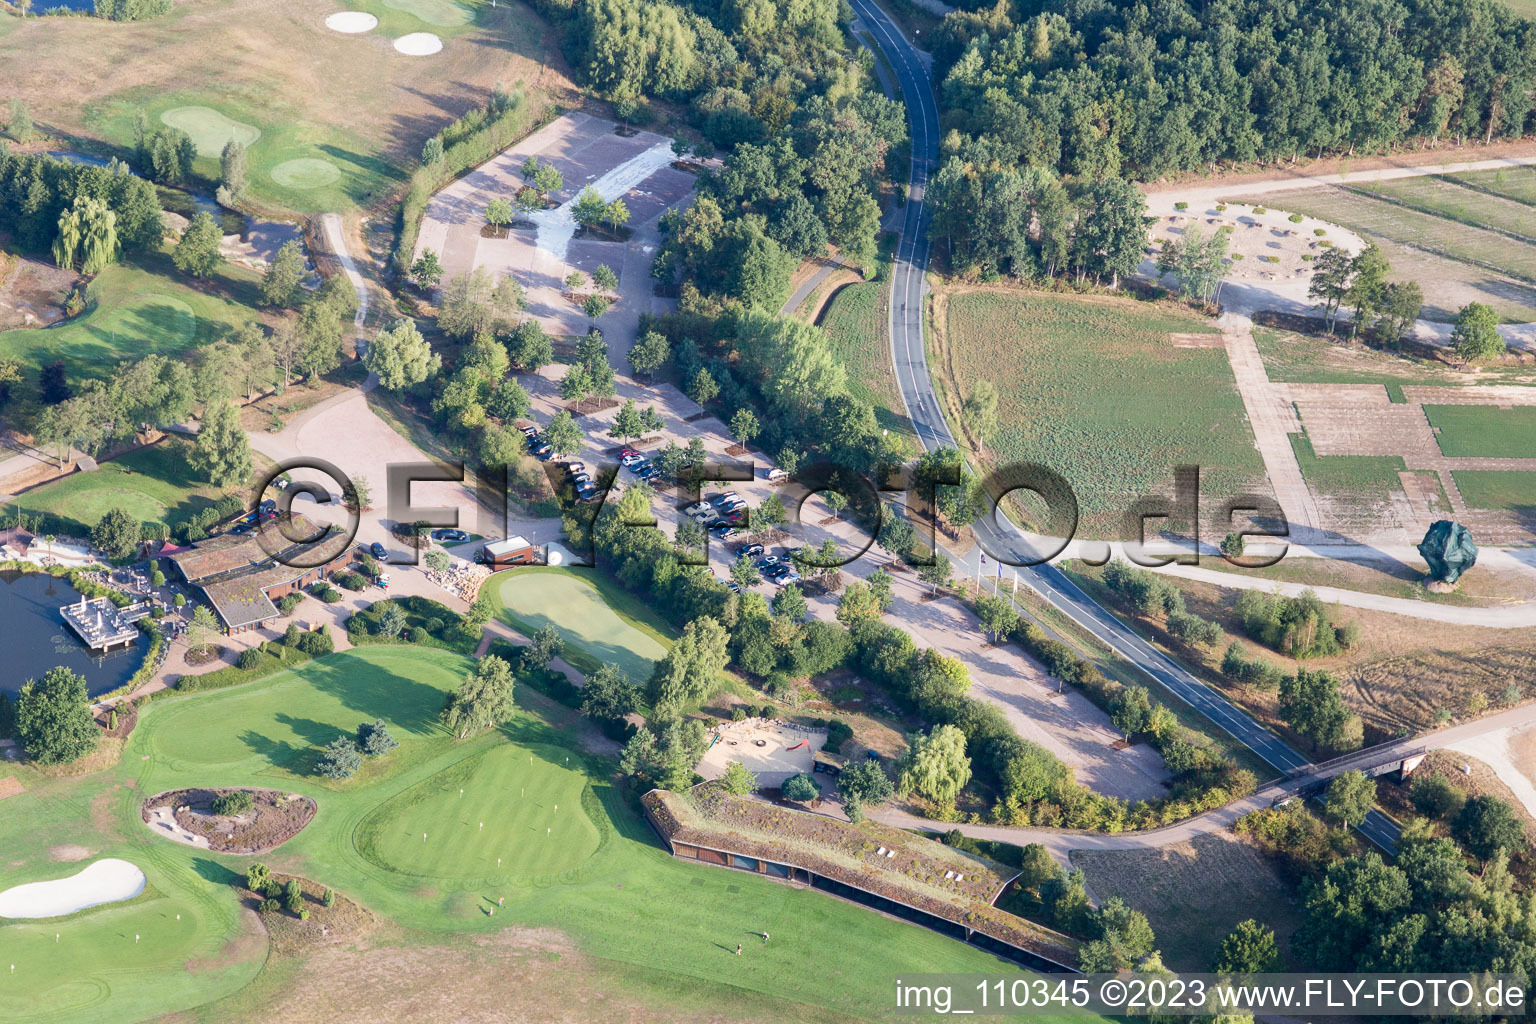 Luftbild von Gelände des Golfplatz Green Eagle Golf Courses in Winsen (Luhe) im Bundesland Niedersachsen, Deutschland